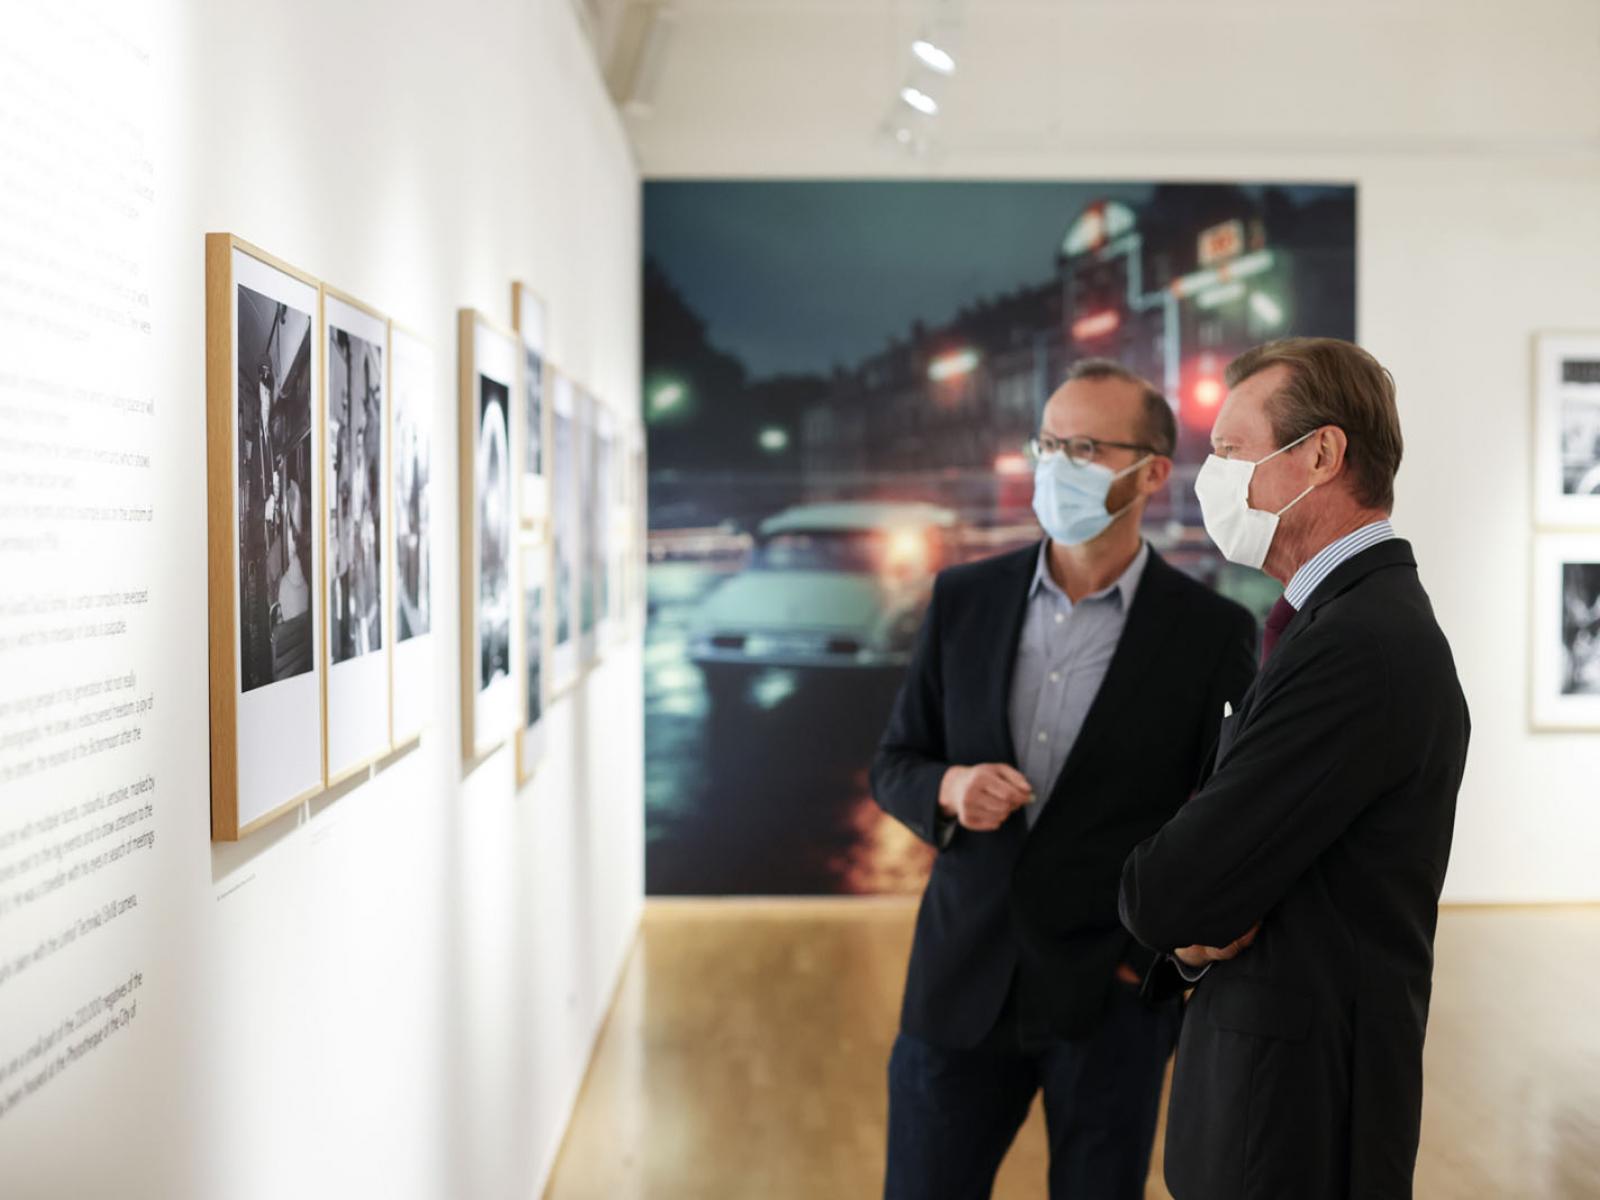 Le Grand-Duc visite l'exposition sur le photographe Pol Aschmann